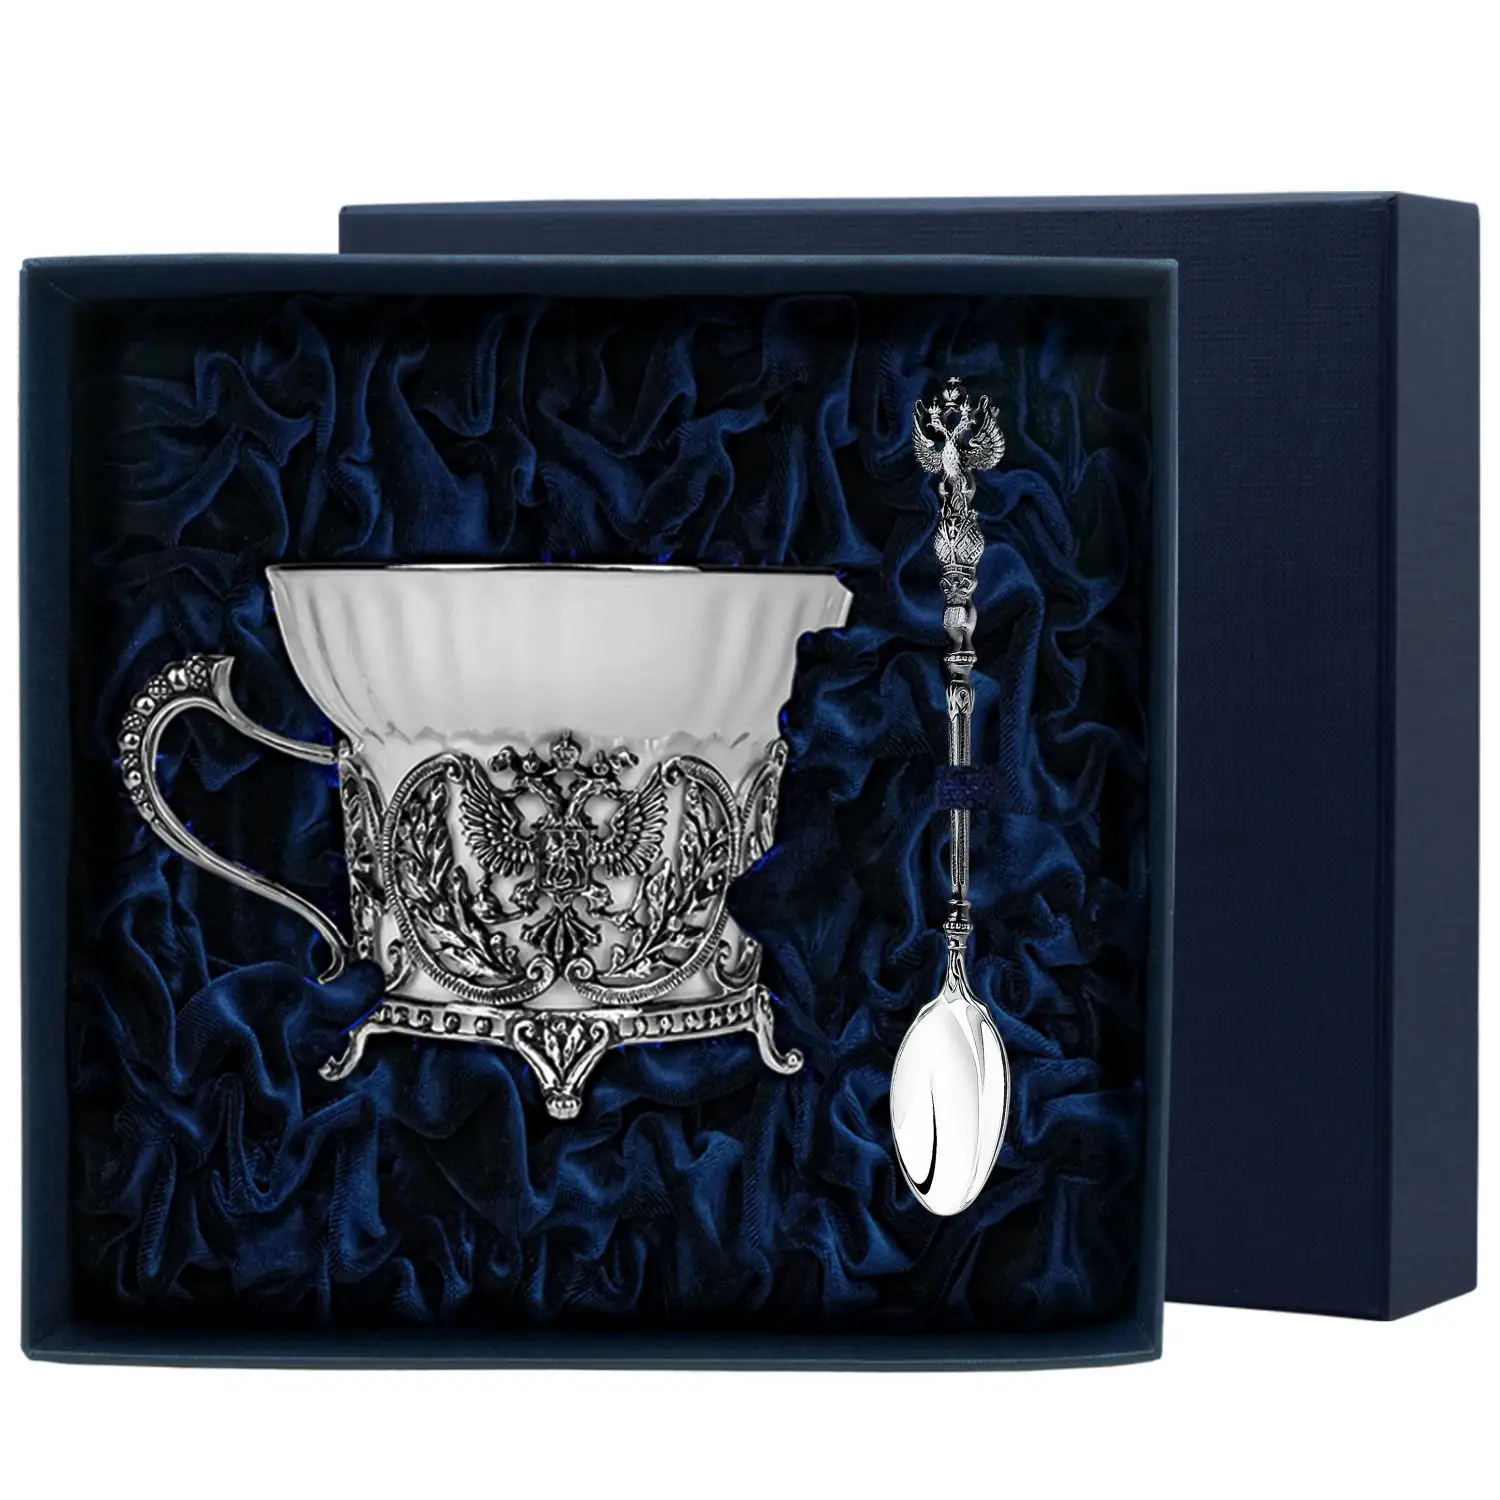 Набор чайная чашка Герб: ложка, чашка (Серебро 925) набор чайная чашка зимородок ложка чашка серебро 925